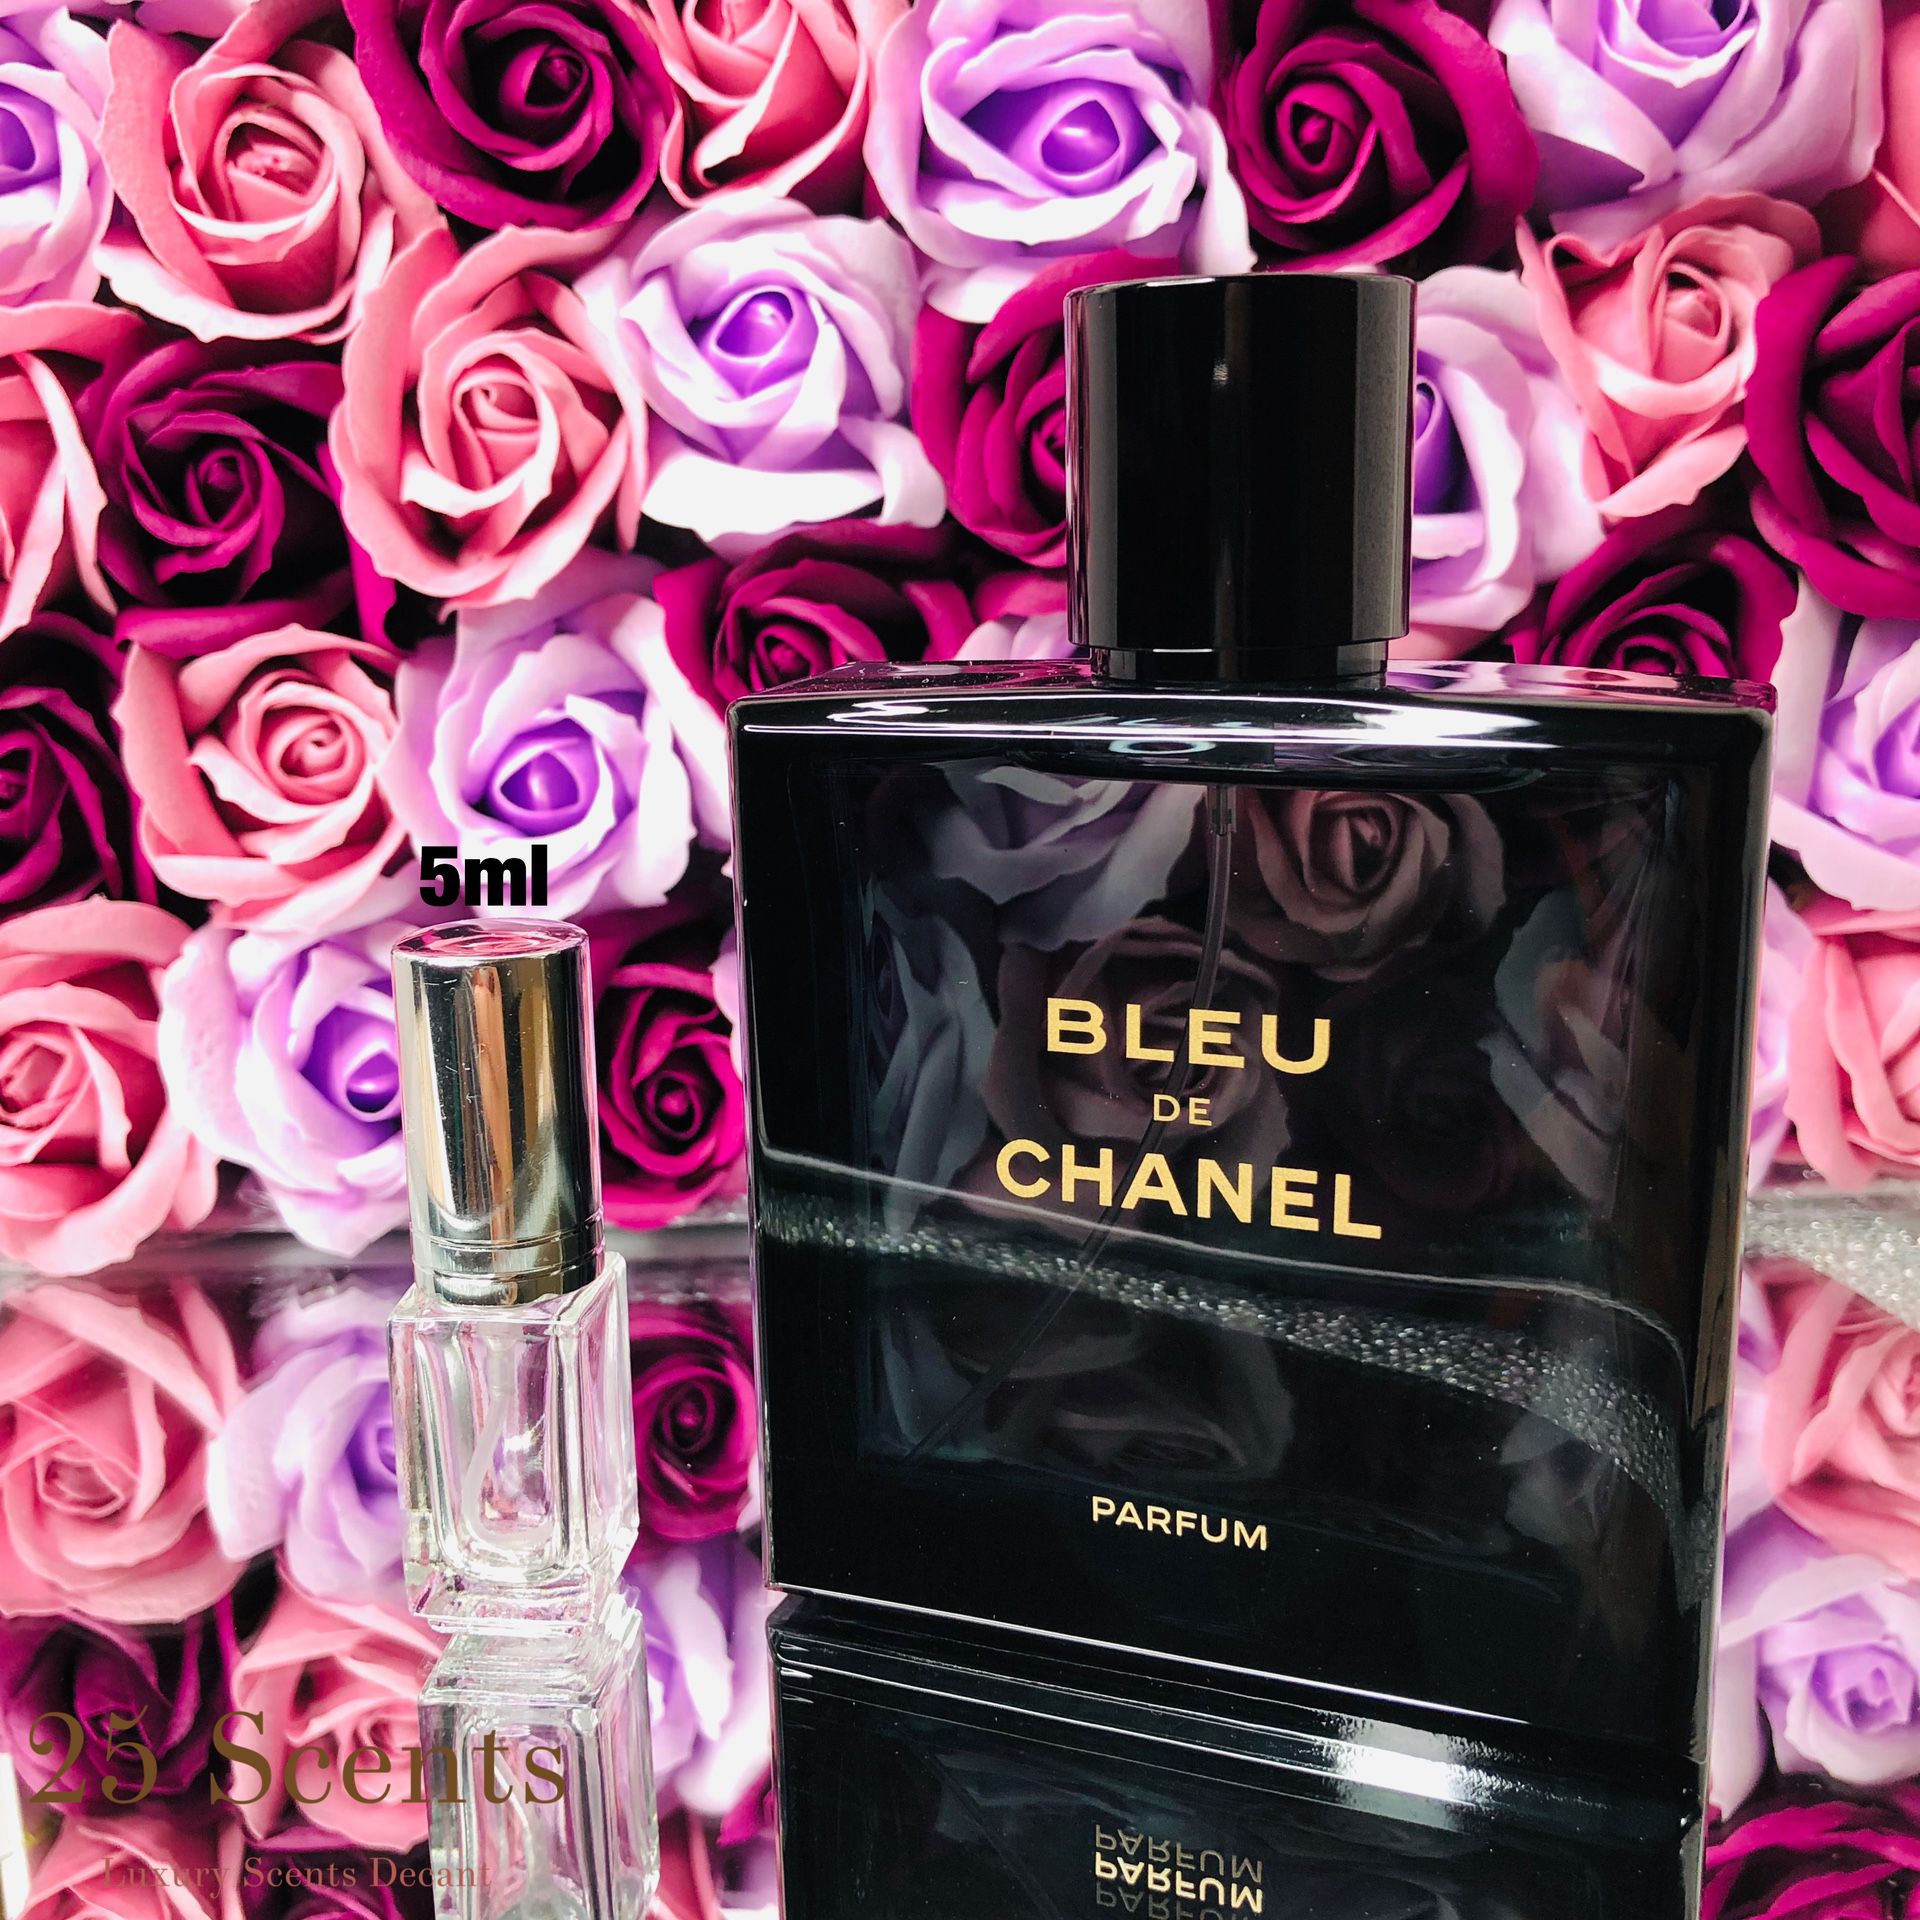 Chanel blue Eau de perfume samples decant purse travel size 5ml glass atomizer Decant